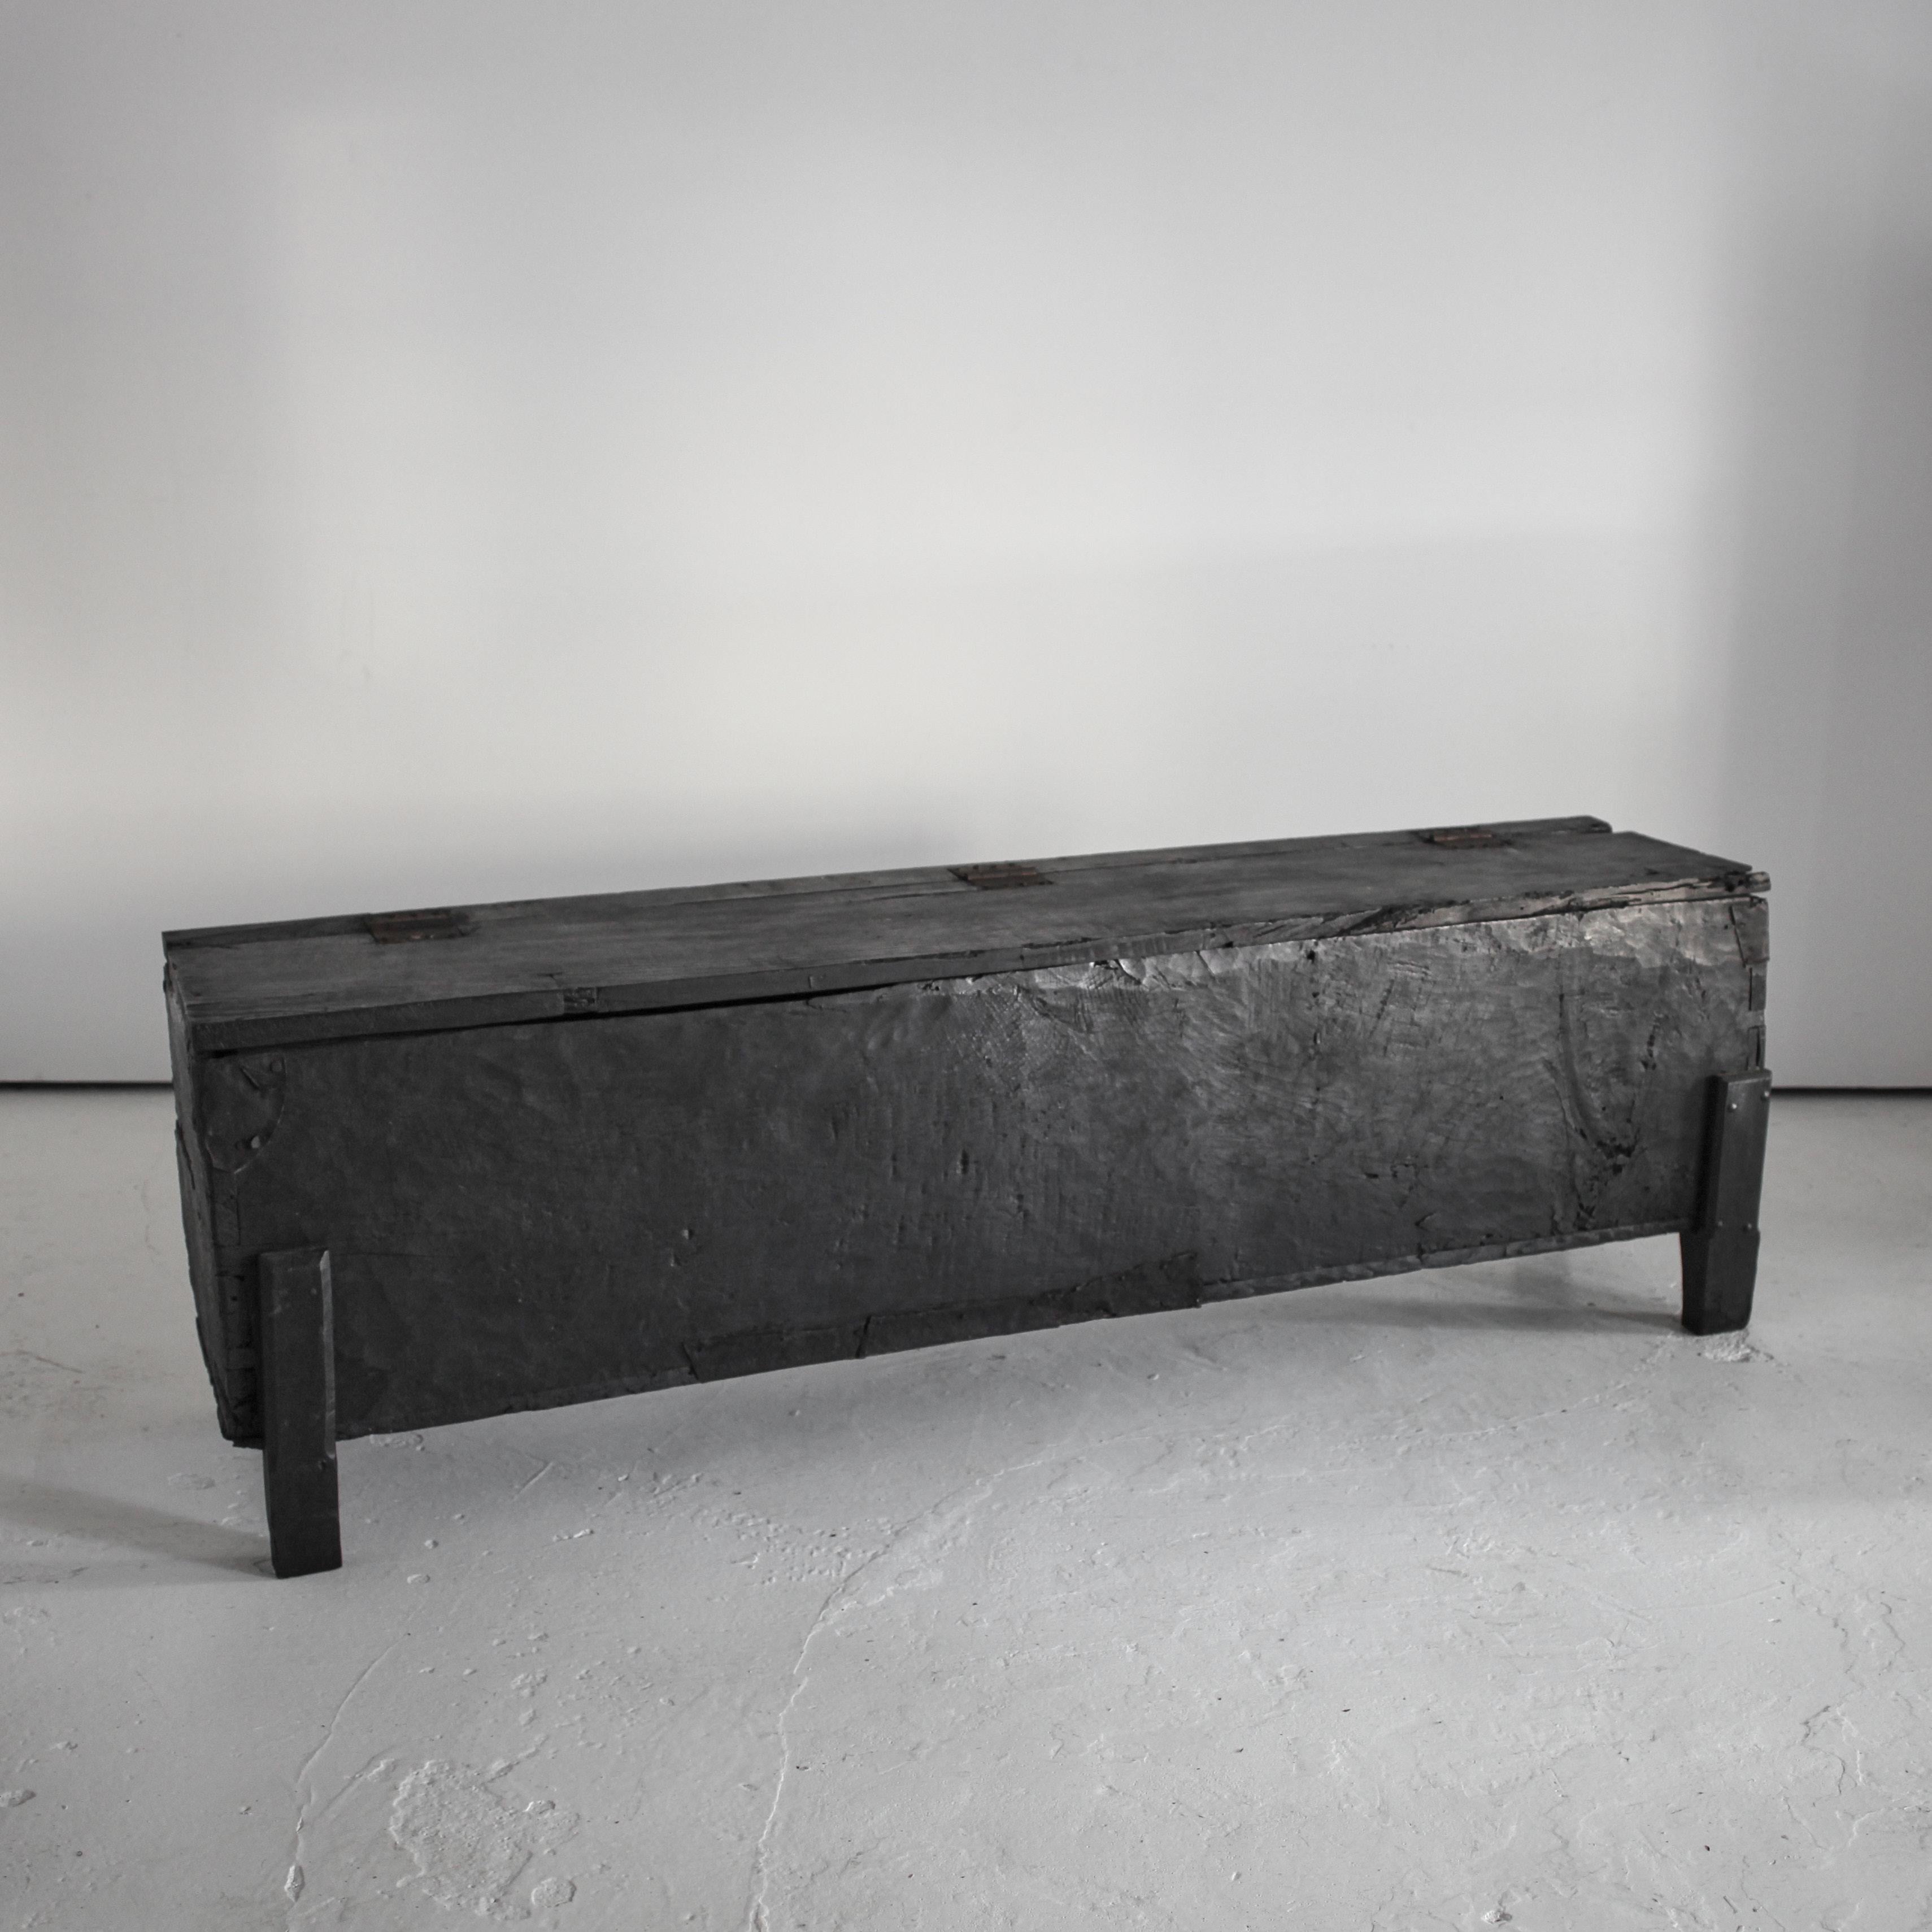 Un cercueil XXL en châtaignier carbonisé taillé du nord du Portugal, datant du début du C.C.

Belle patine avec des réparations métalliques anciennes.

Parfait comme console et/ou rangement.